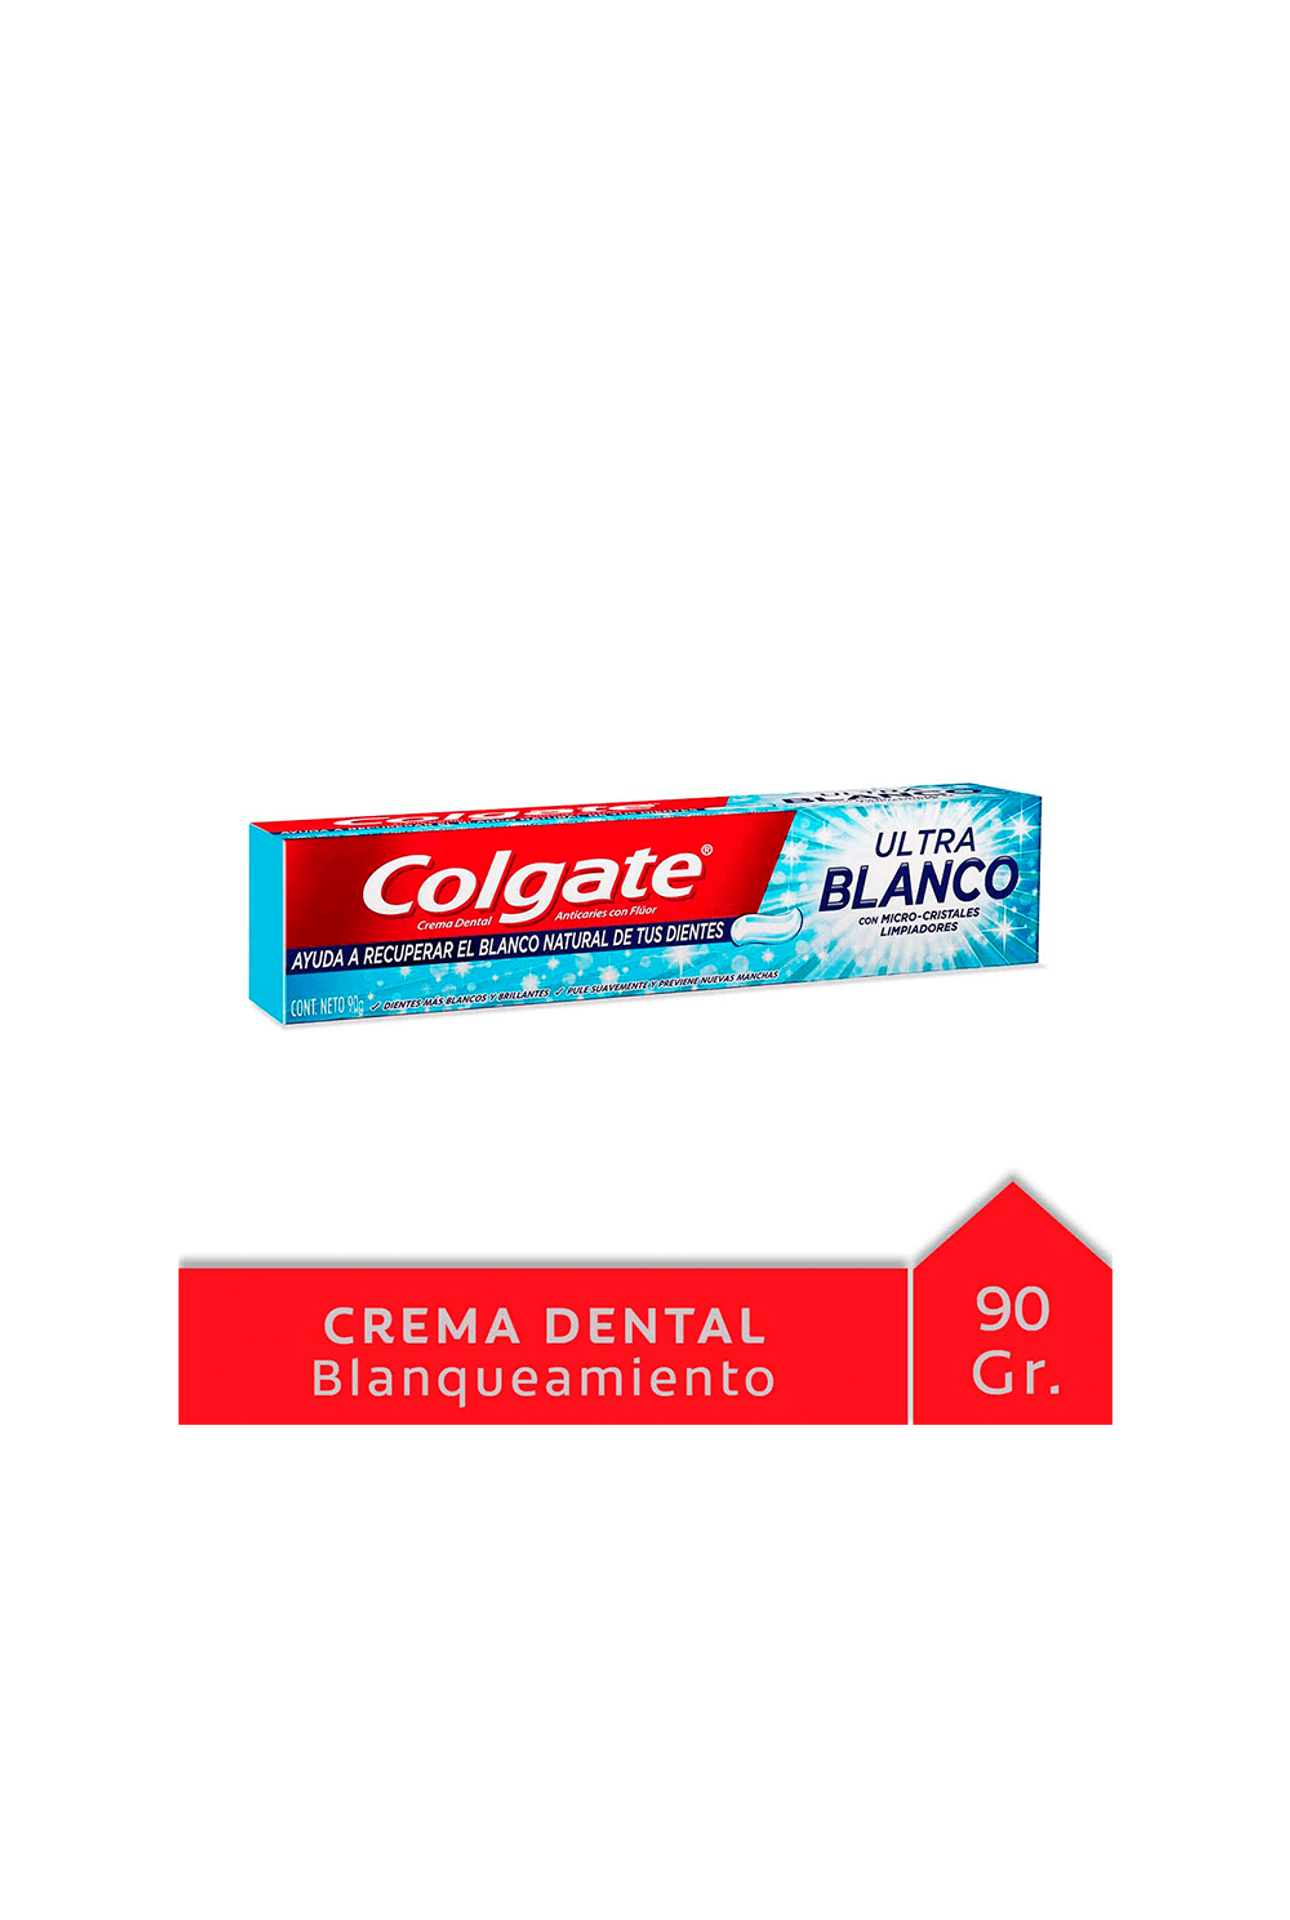 Colgate-Pasta-Dental-Colgate-Ultra-Blanco-x-90gr-7793100111891_img1